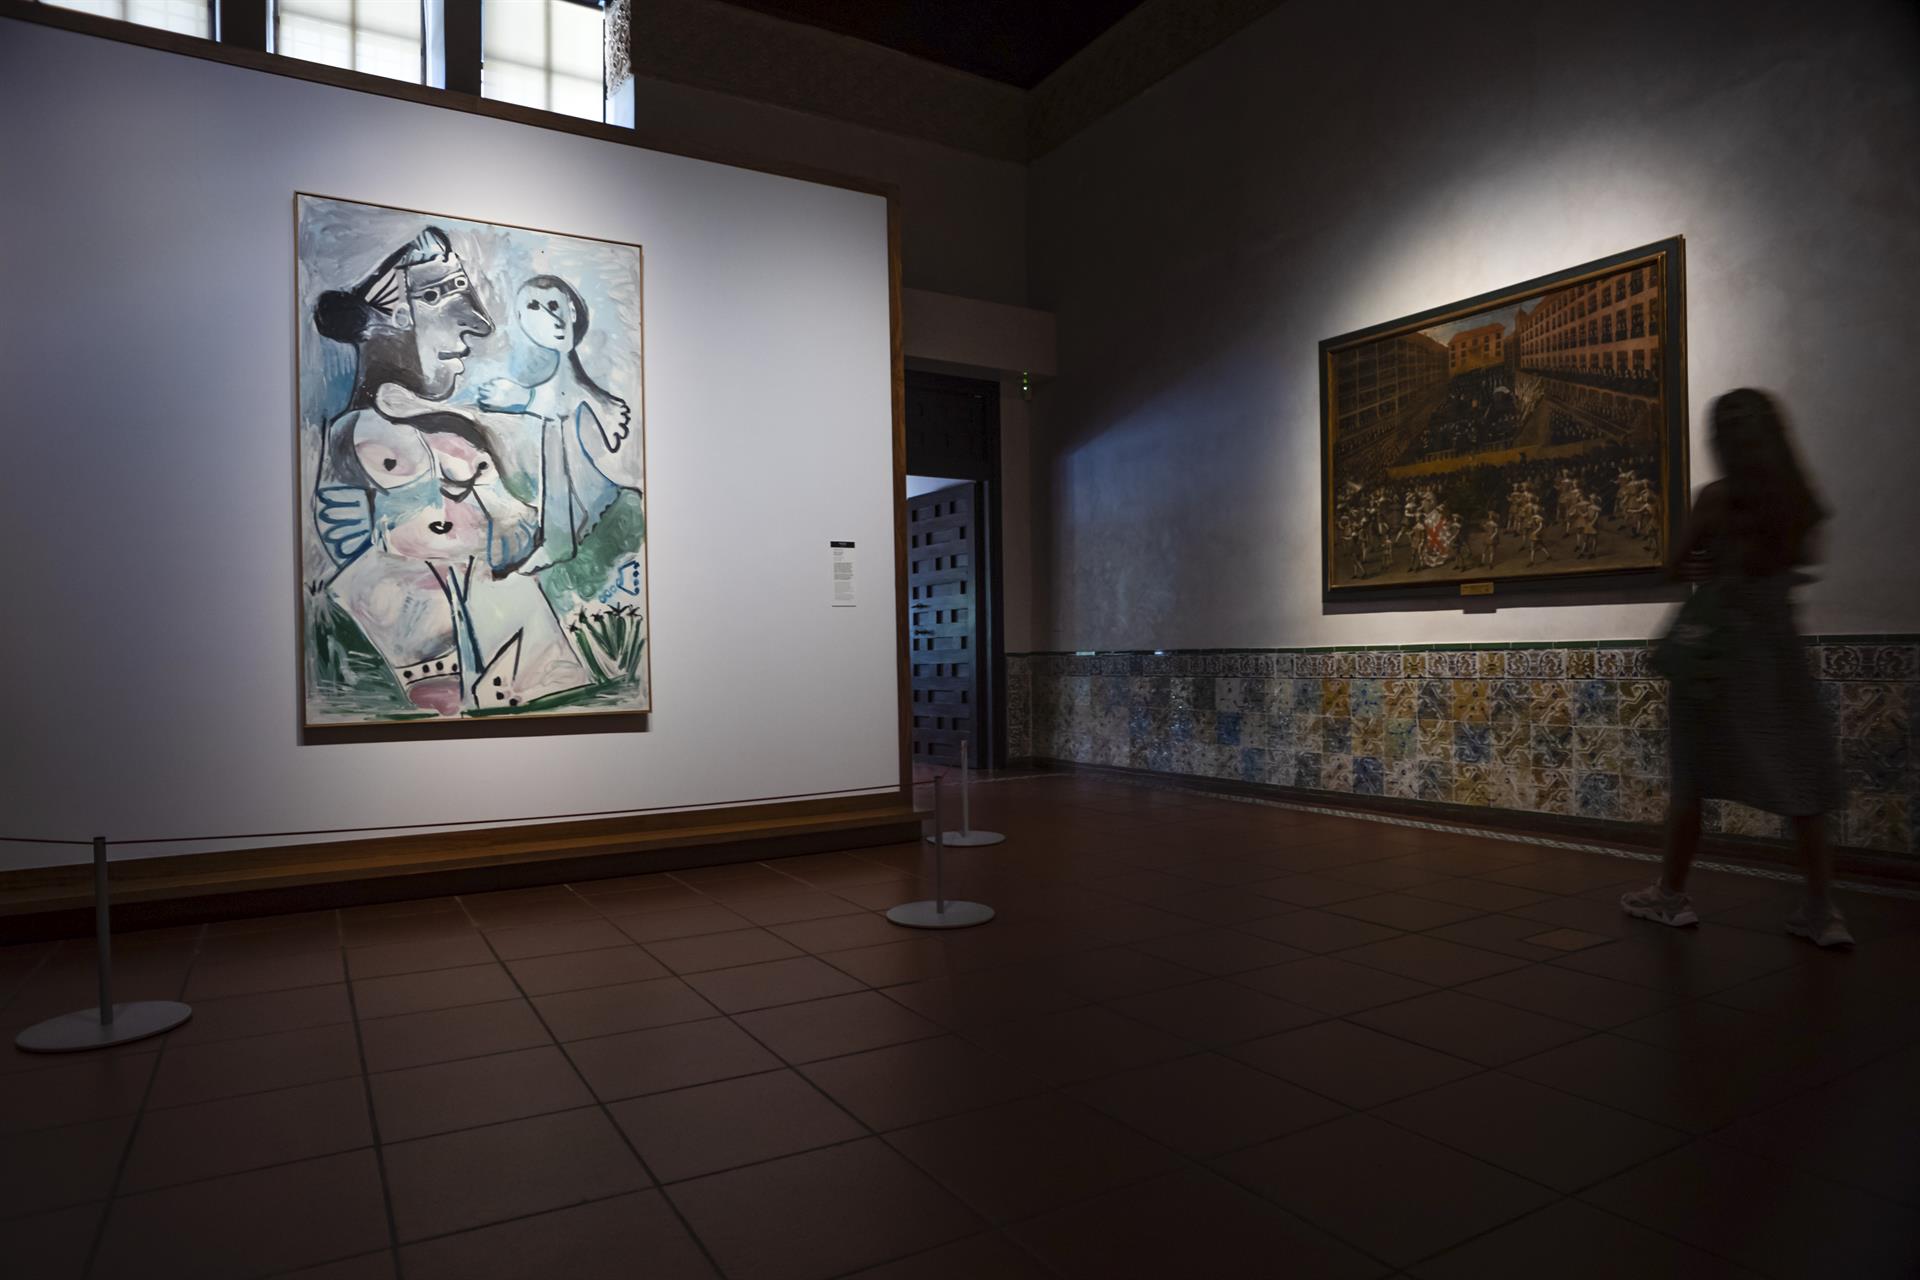 El cuadro de Picasso 'Venus y el Amor' esconde una historia "apasionante" que ha recordado el toledano Museo del Greco al exponer temporalmente esta pintura, una historia que se remonta al año 1967 y que vincula a los jóvenes de la ciudad suiza de Basilea con el pintor malagueño. EFE/Ángeles Visdómine